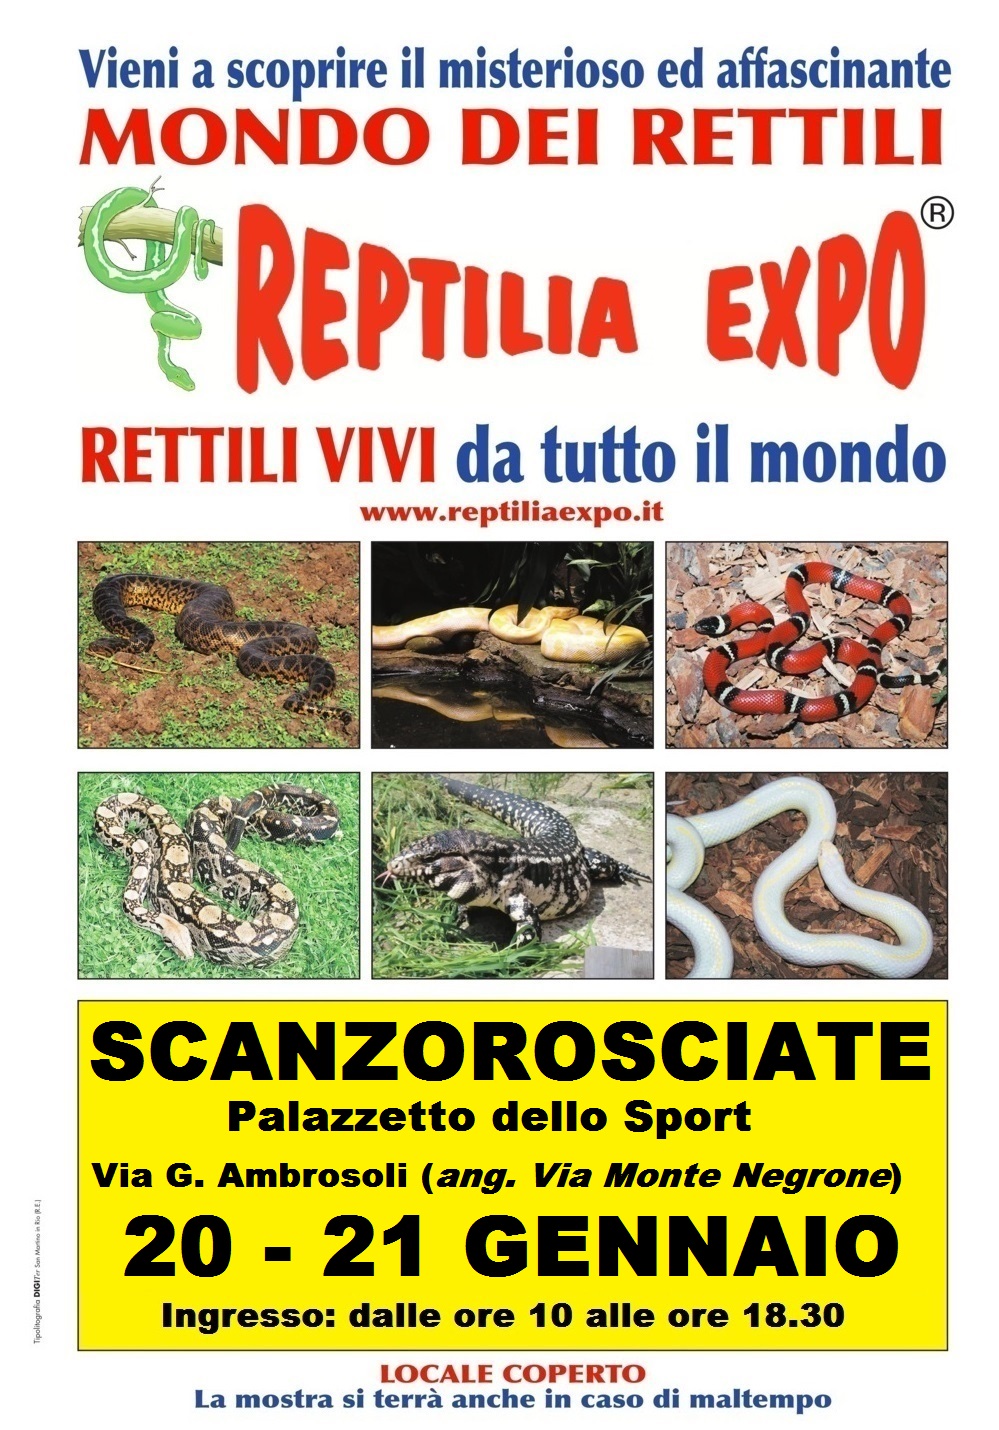 REPTILIA EXPO - L'affascinante mondo dei rettili arriva a Bergamo presso il Palazzetto dello Sport di Scanzorosciate